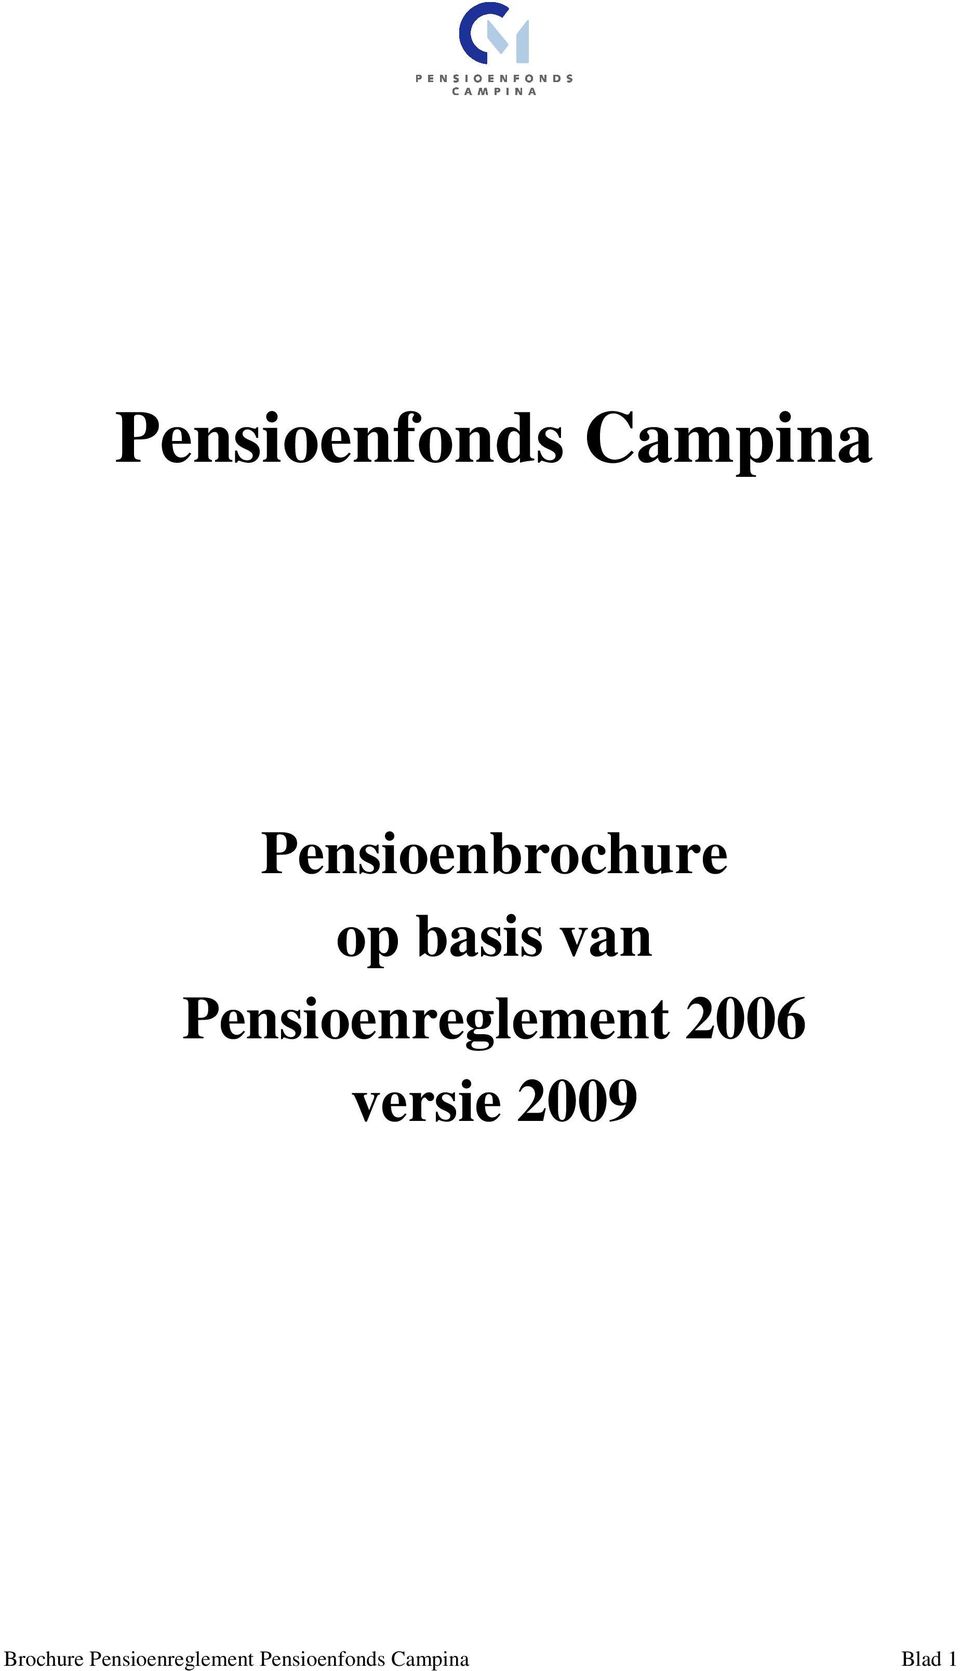 Pensioenreglement 2006 versie 2009